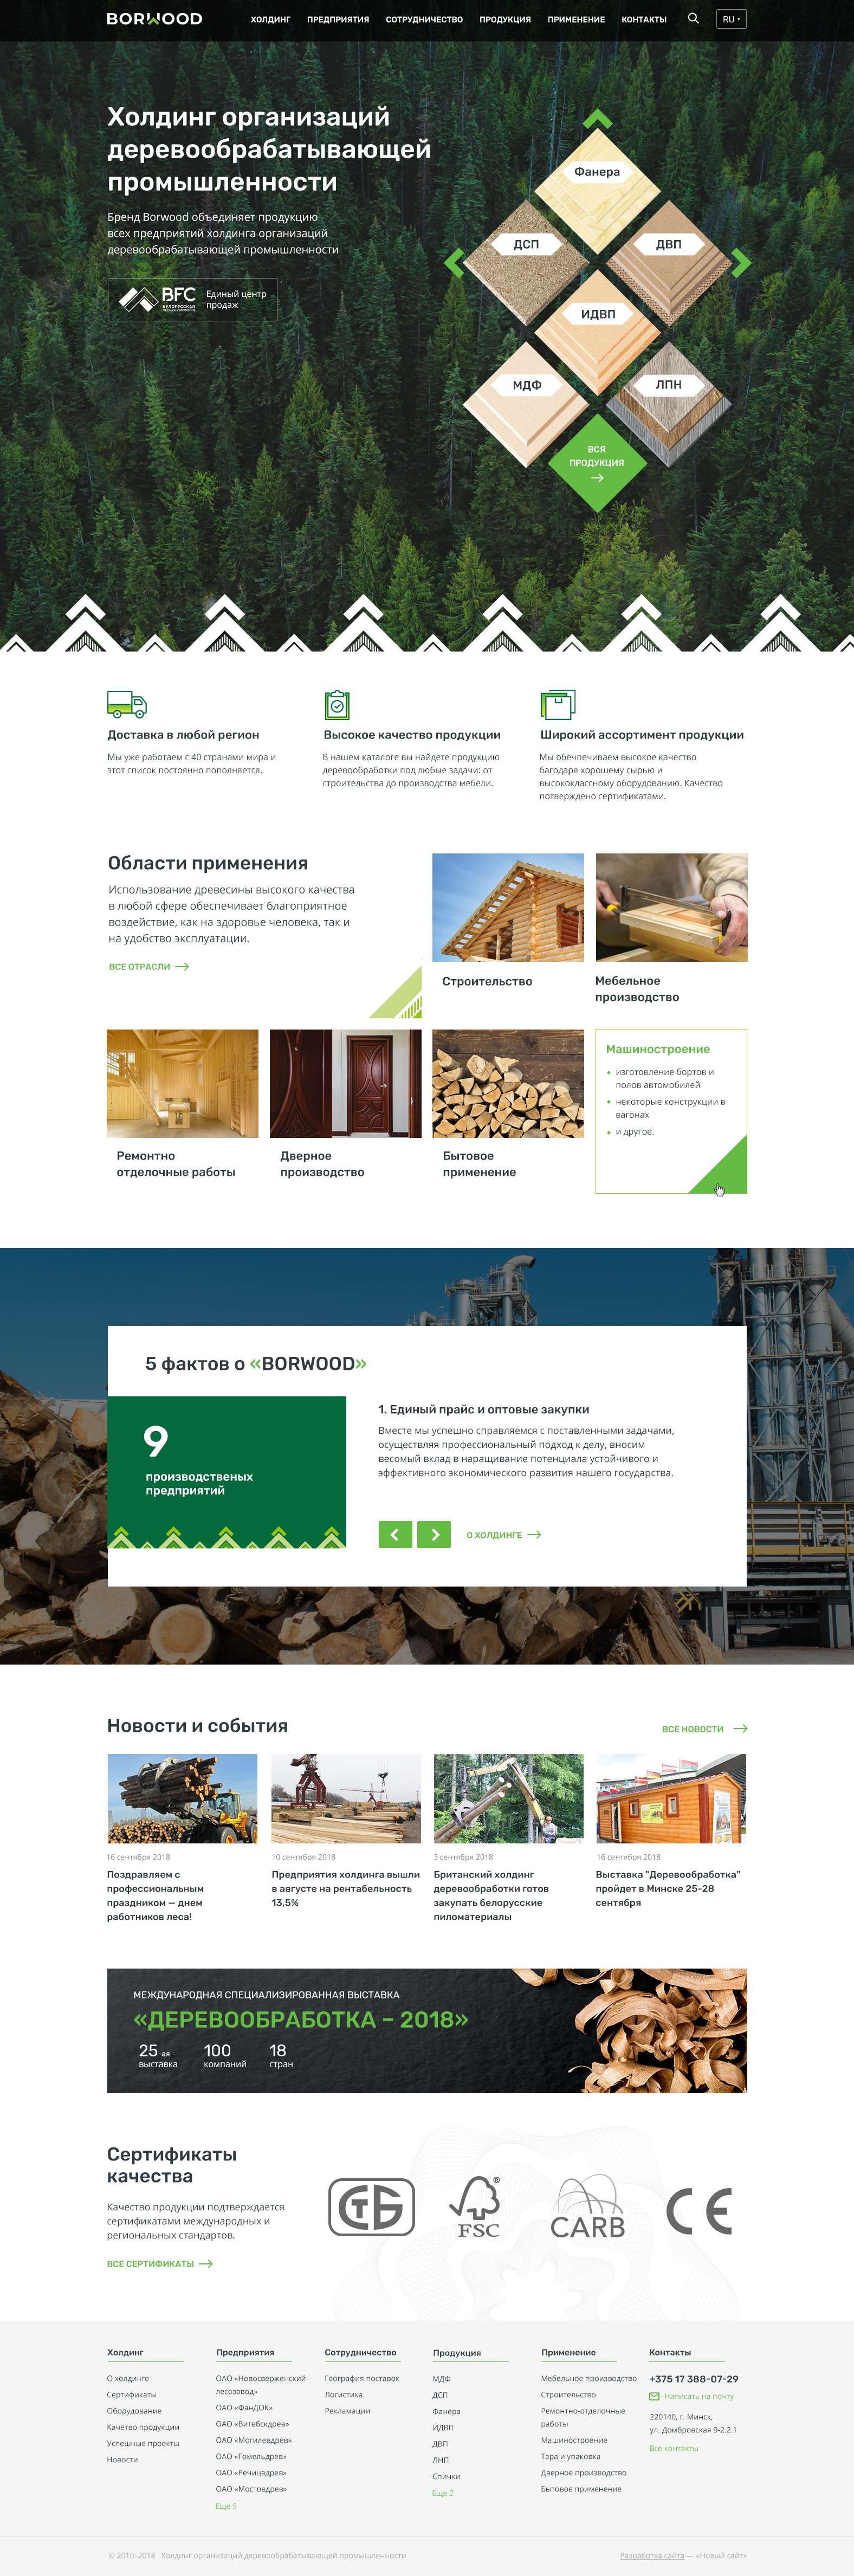 borwood - холдинг организаций деревообрабатывающей промышленности